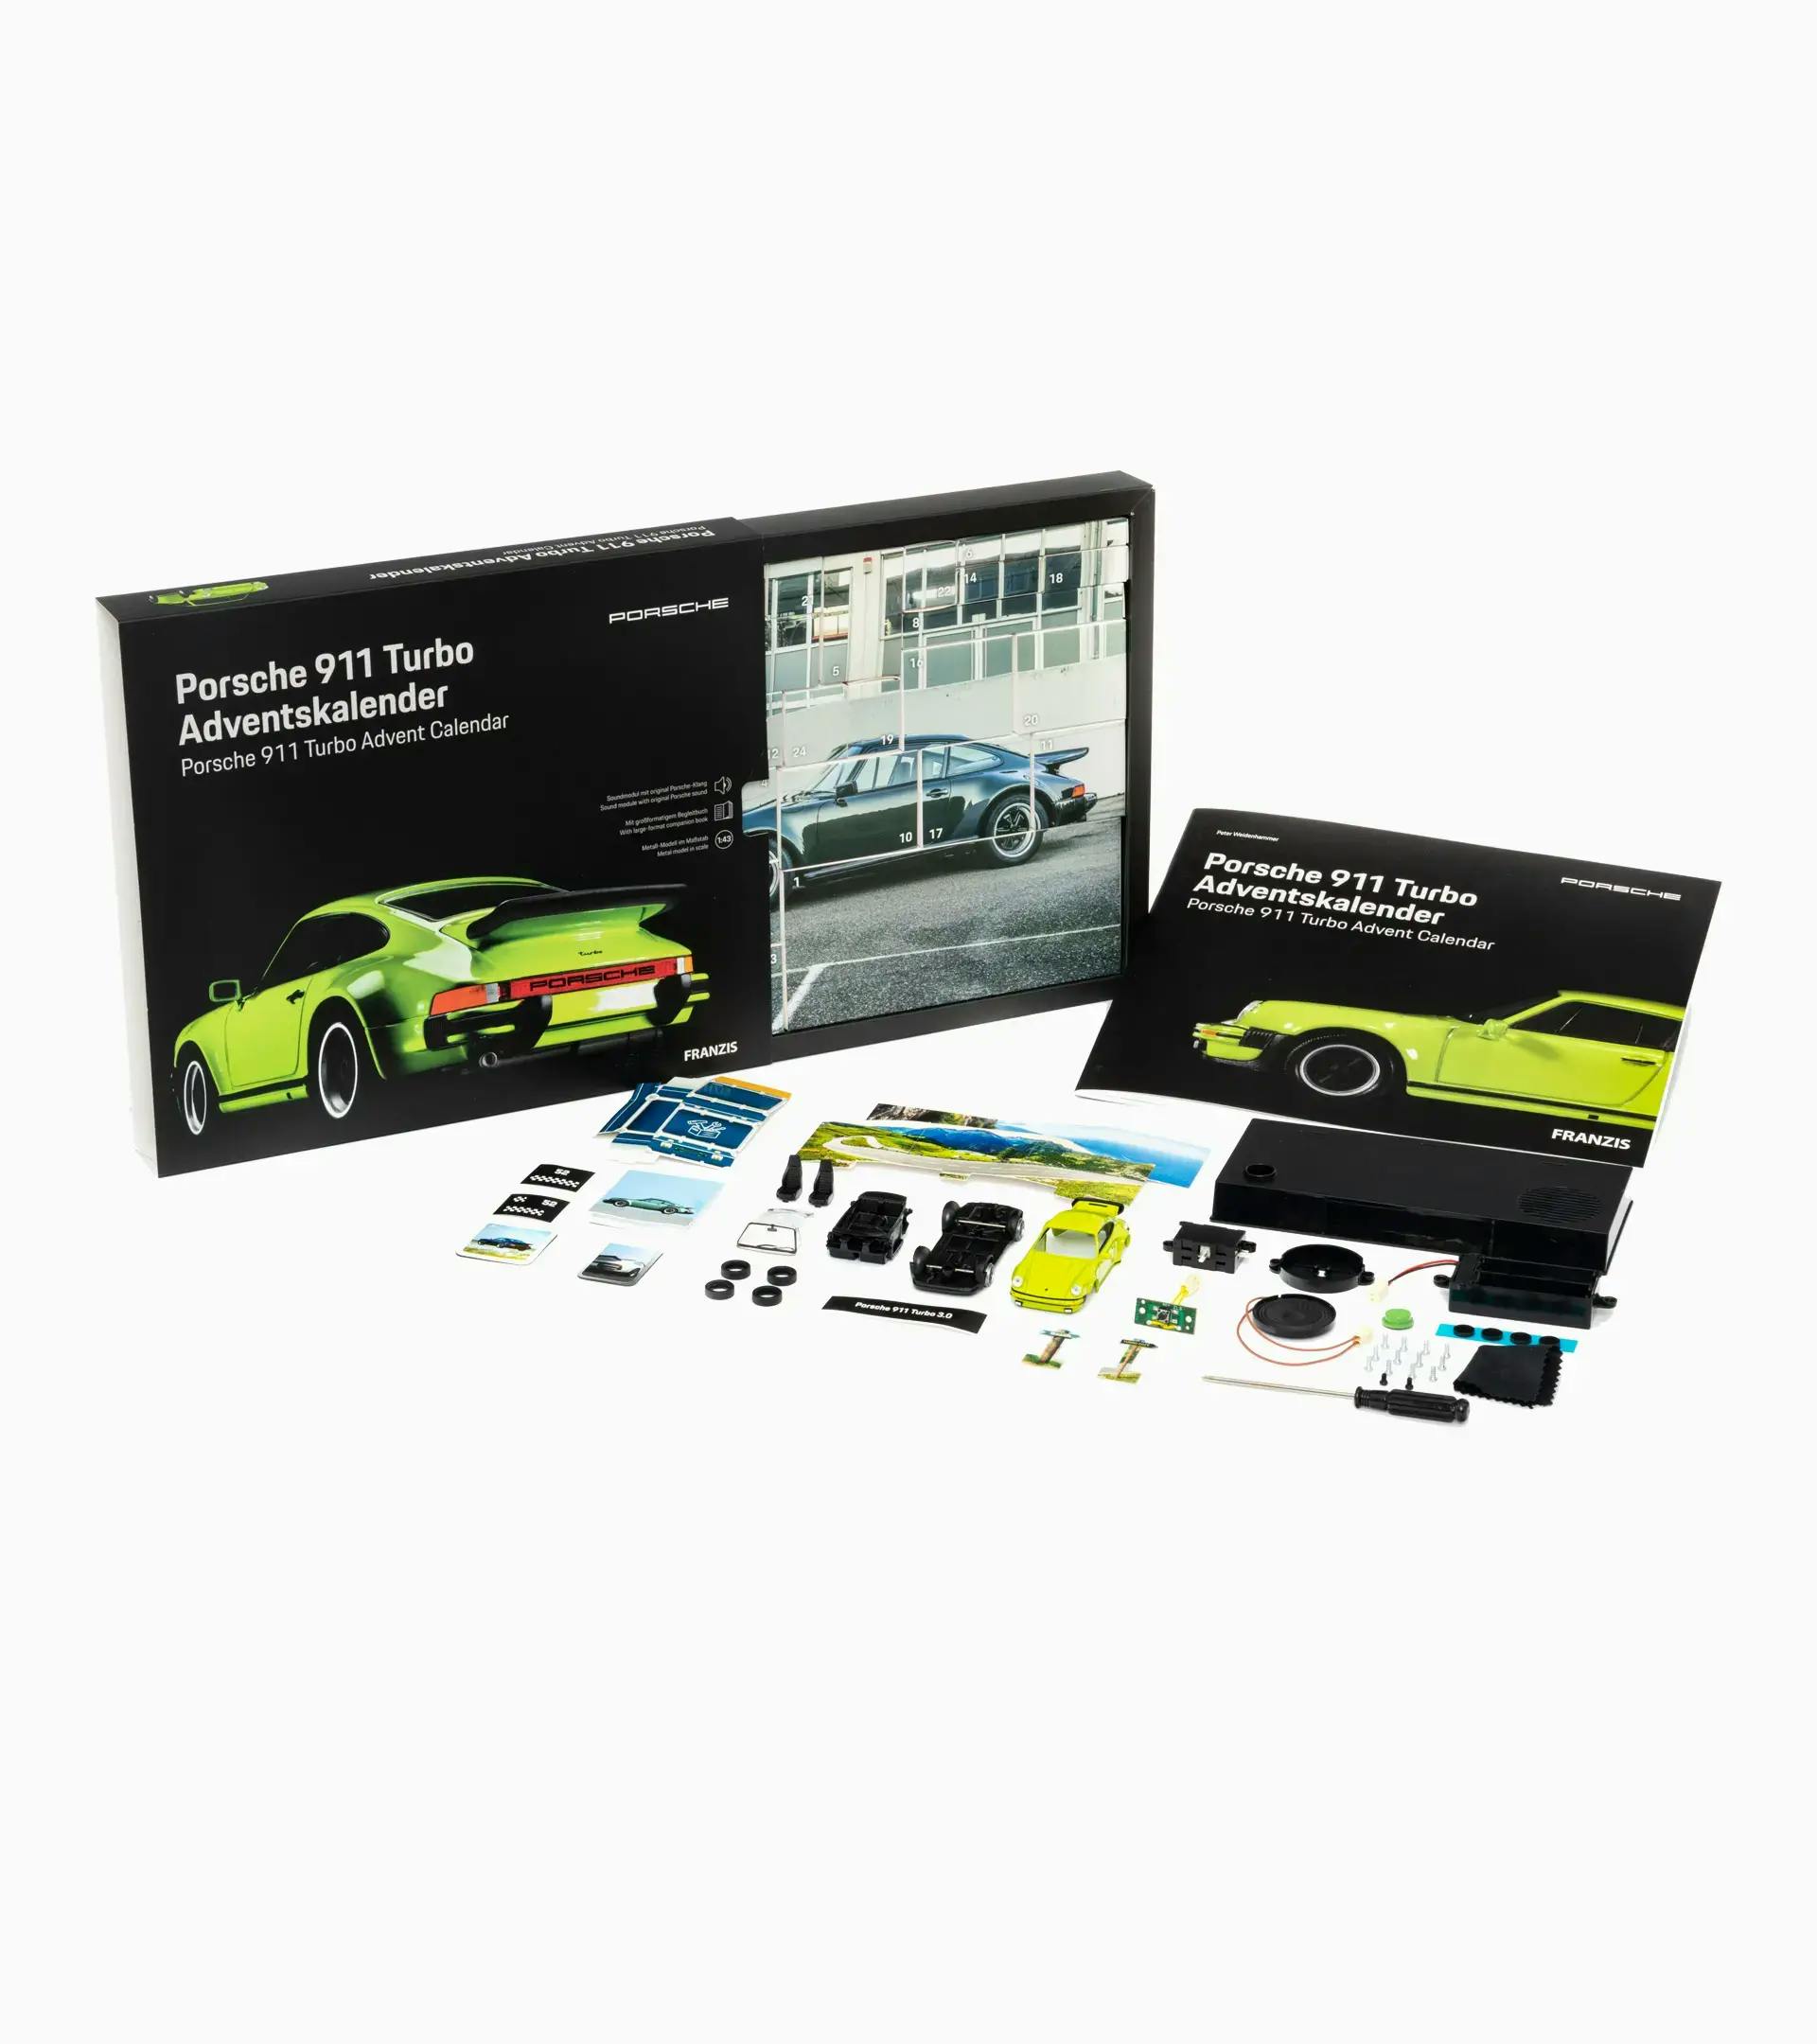 Porsche 911 Turbo Adventskalender 4